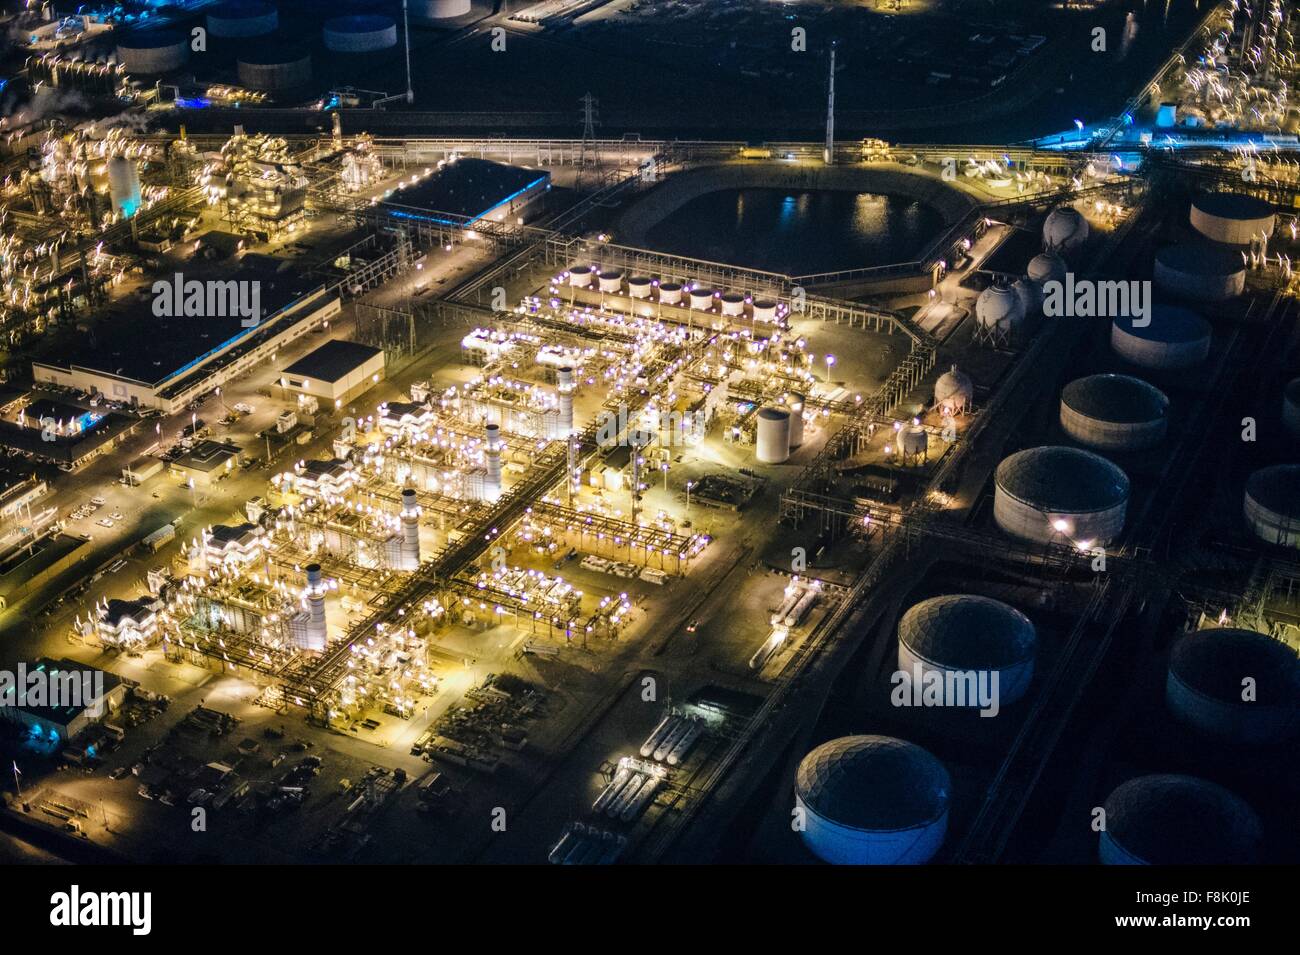 Vue aérienne de la raffinerie de pétrole et des réservoirs de stockage est éclairée la nuit, Los Angeles, Californie, USA Banque D'Images